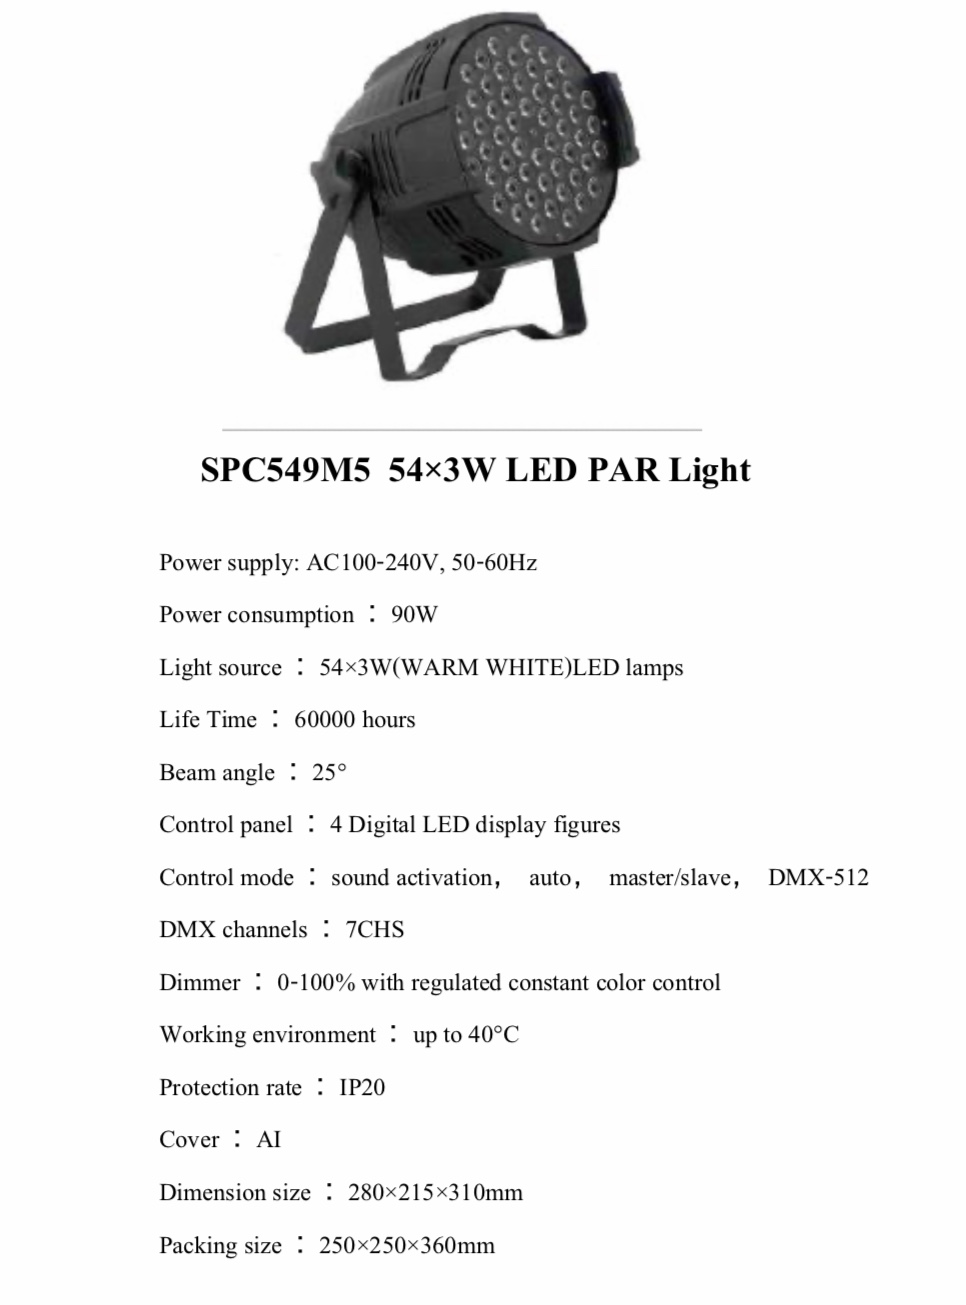 PAR LED 54x3w WARM WHITE SPC549 M5